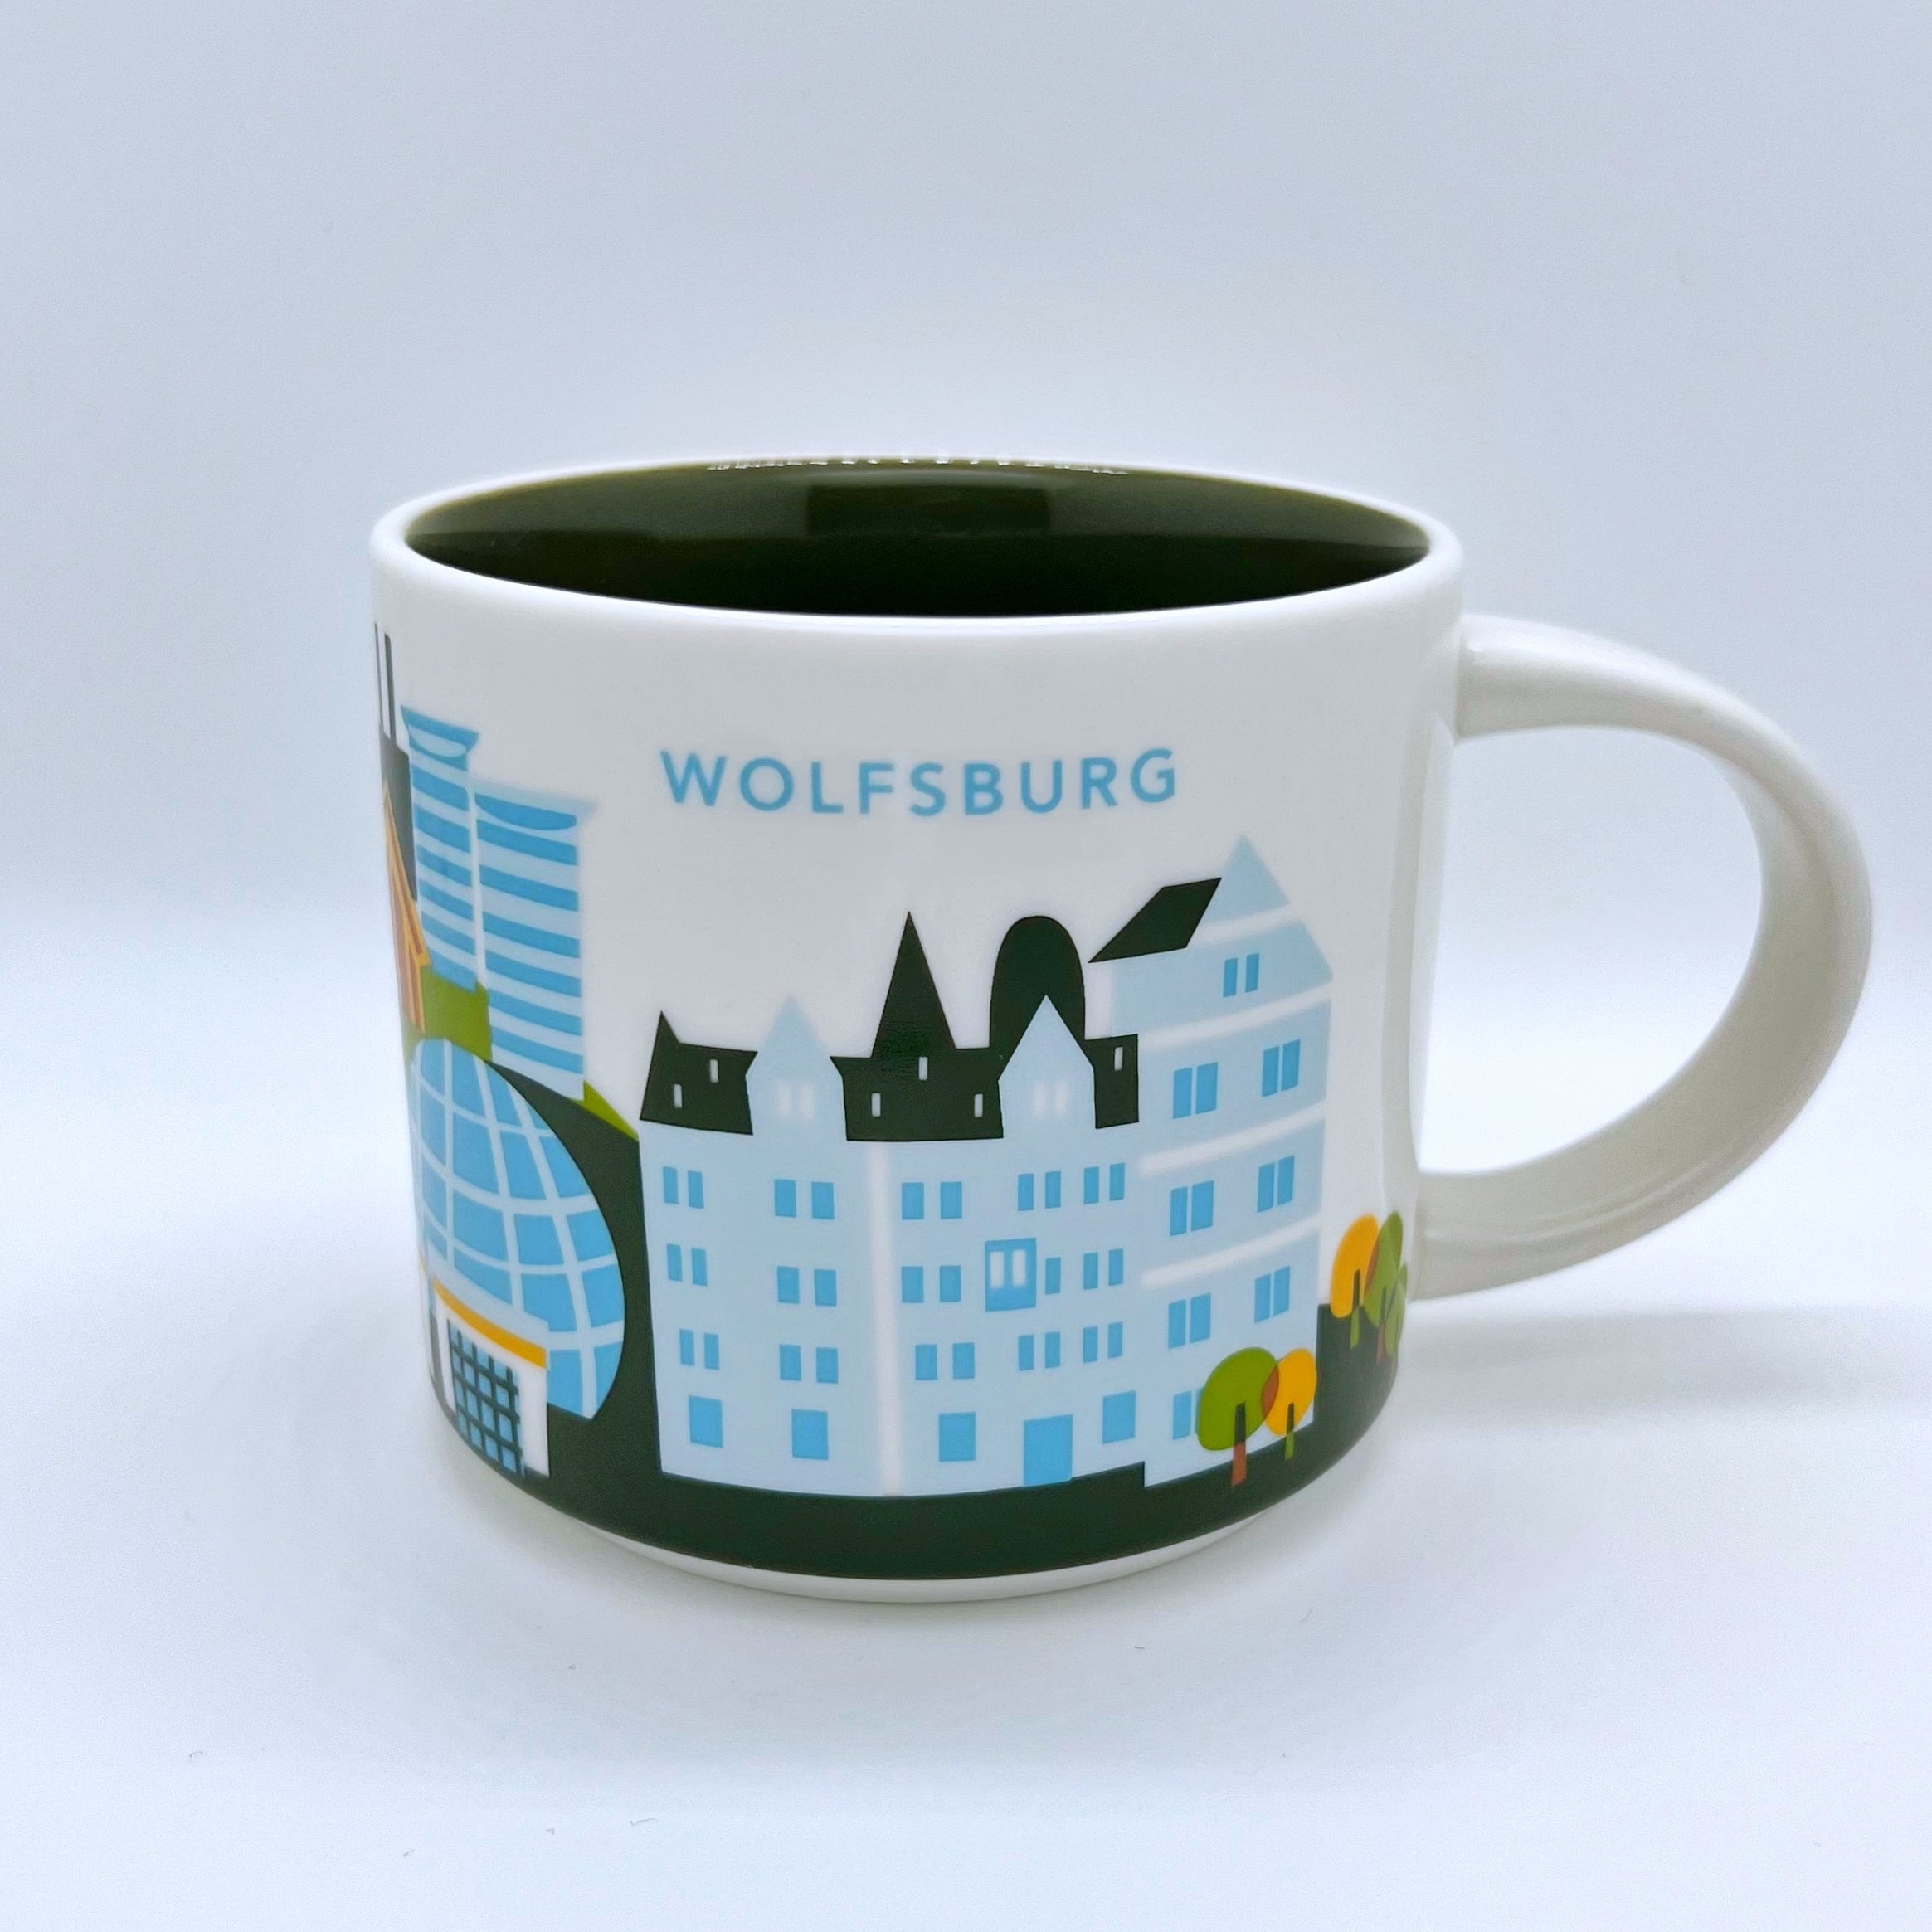 Kaffee Tee und Cappuccino Tasse von Starbucks mit gemalten Bildern aus der Stadt Wolfsburg